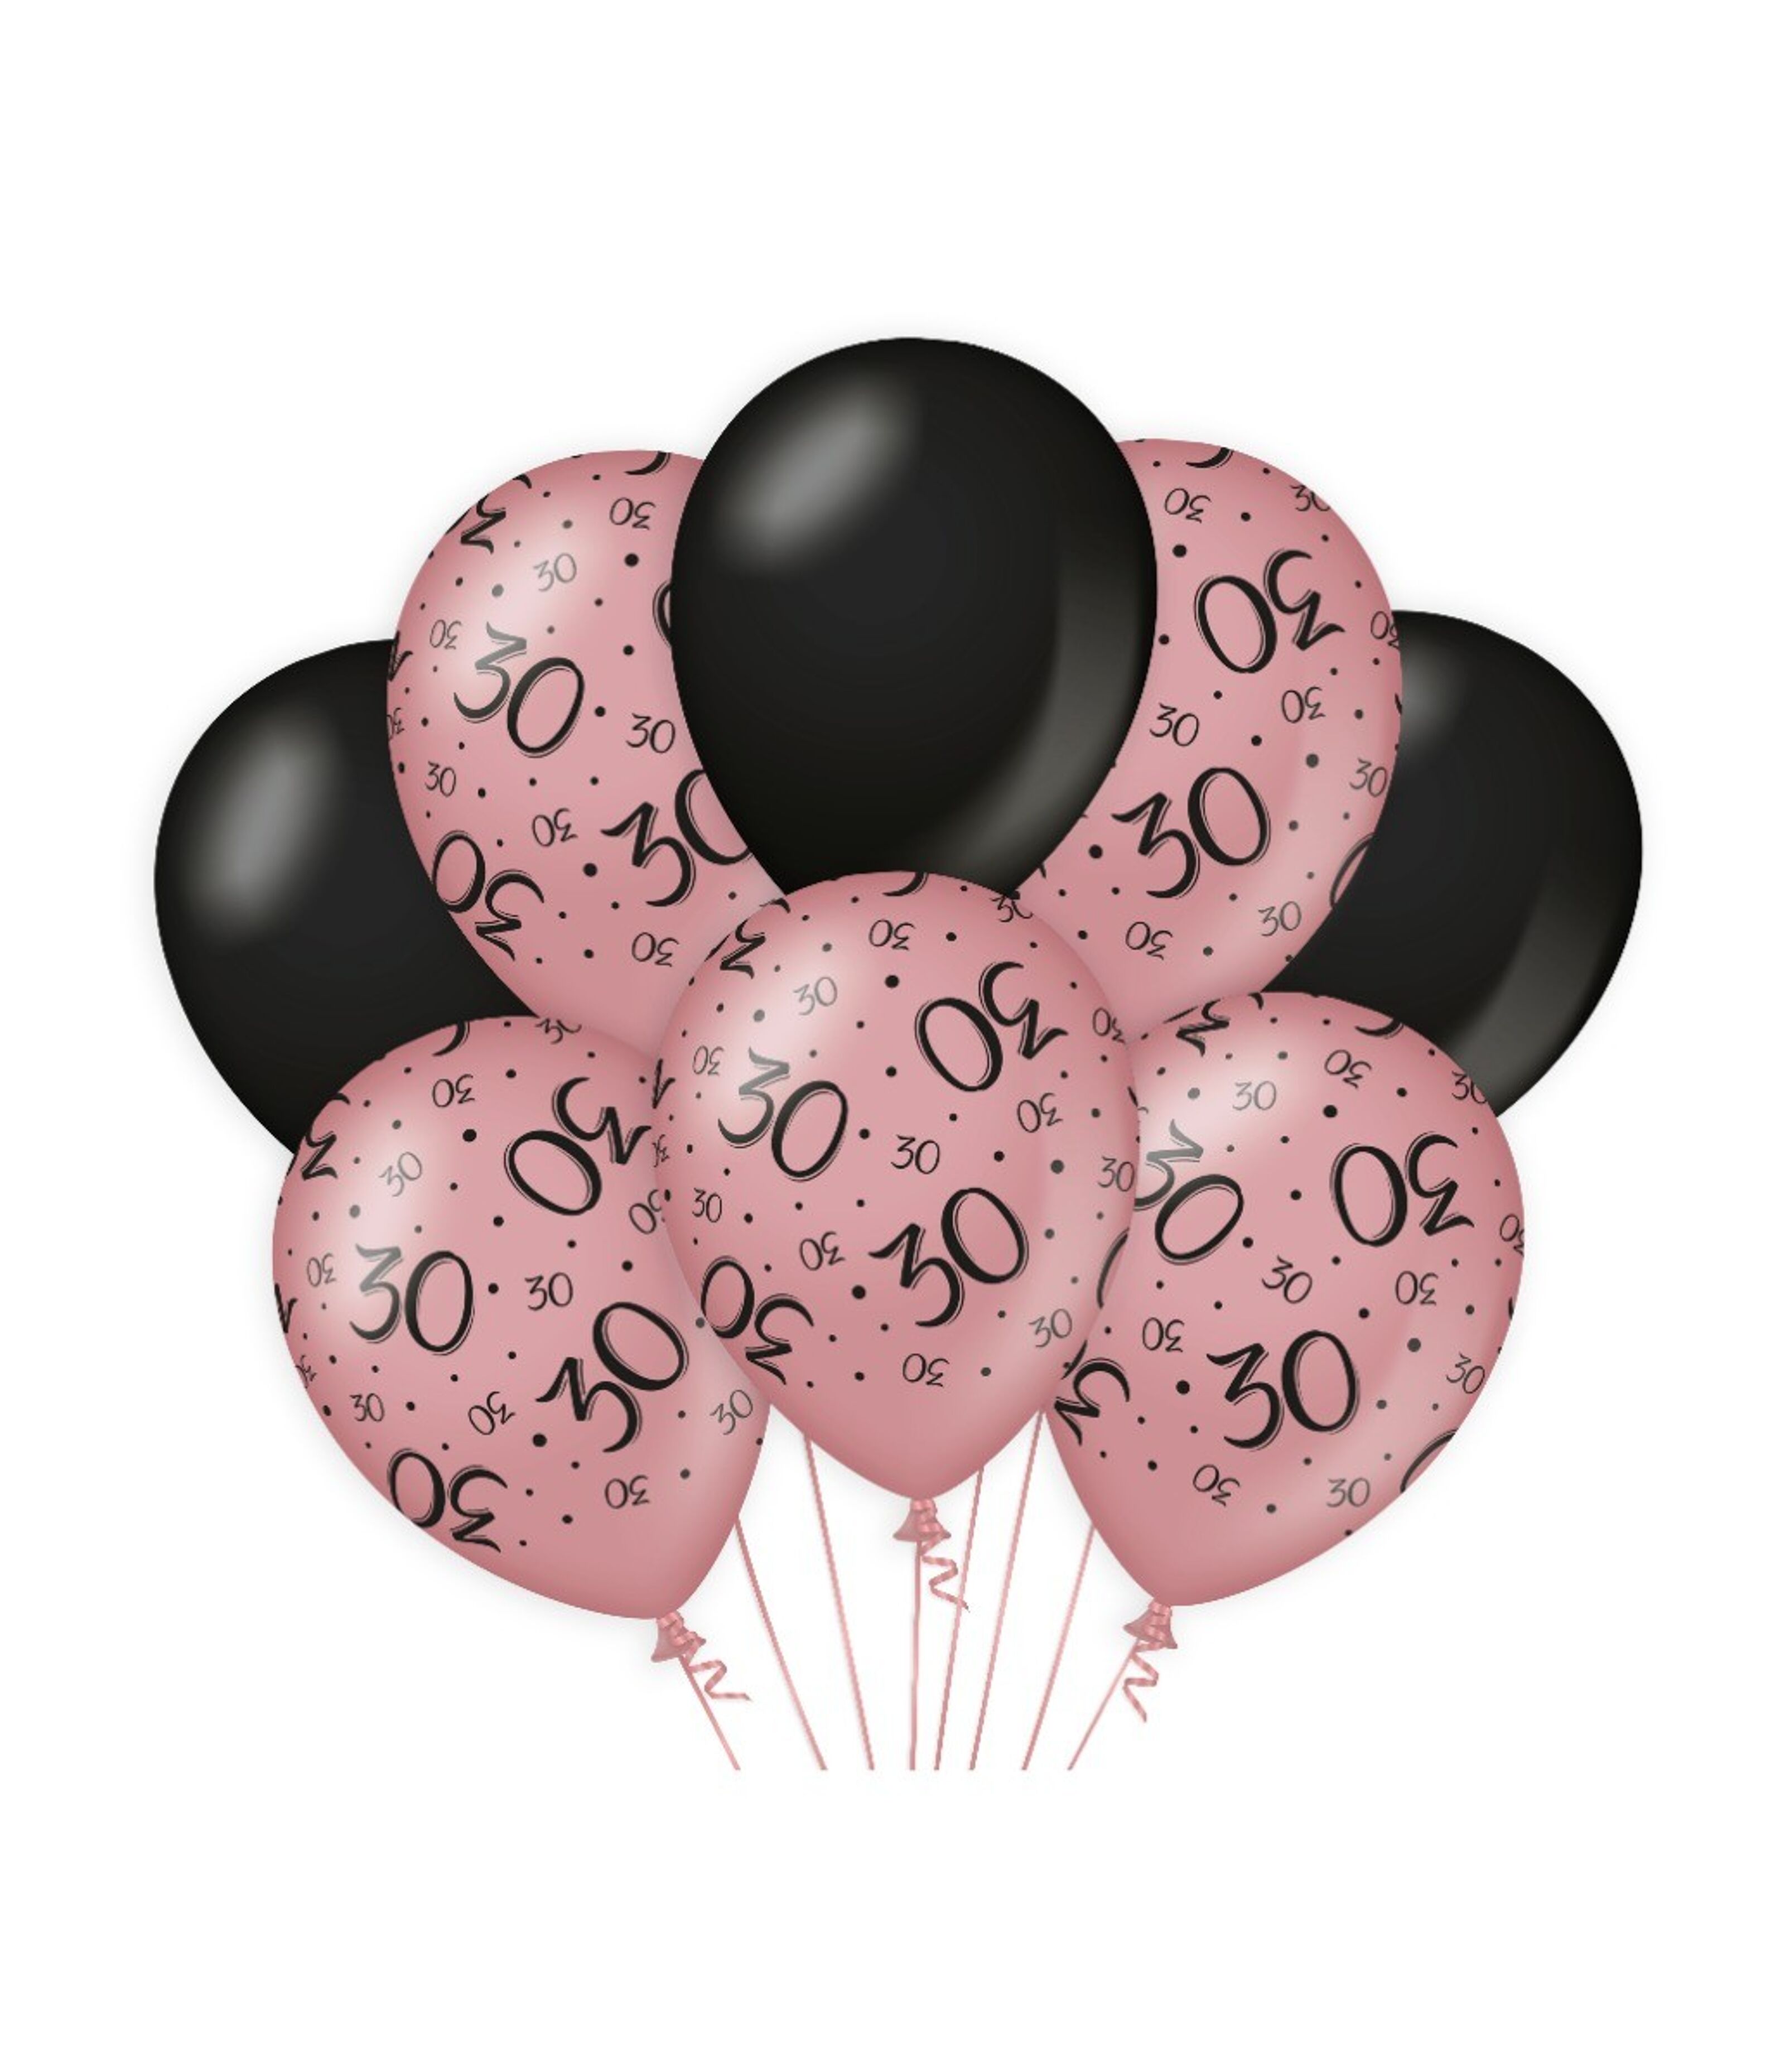 Kaufen Sie Deko Ballons rosa/schwarz - 30 zu Großhandelspreisen